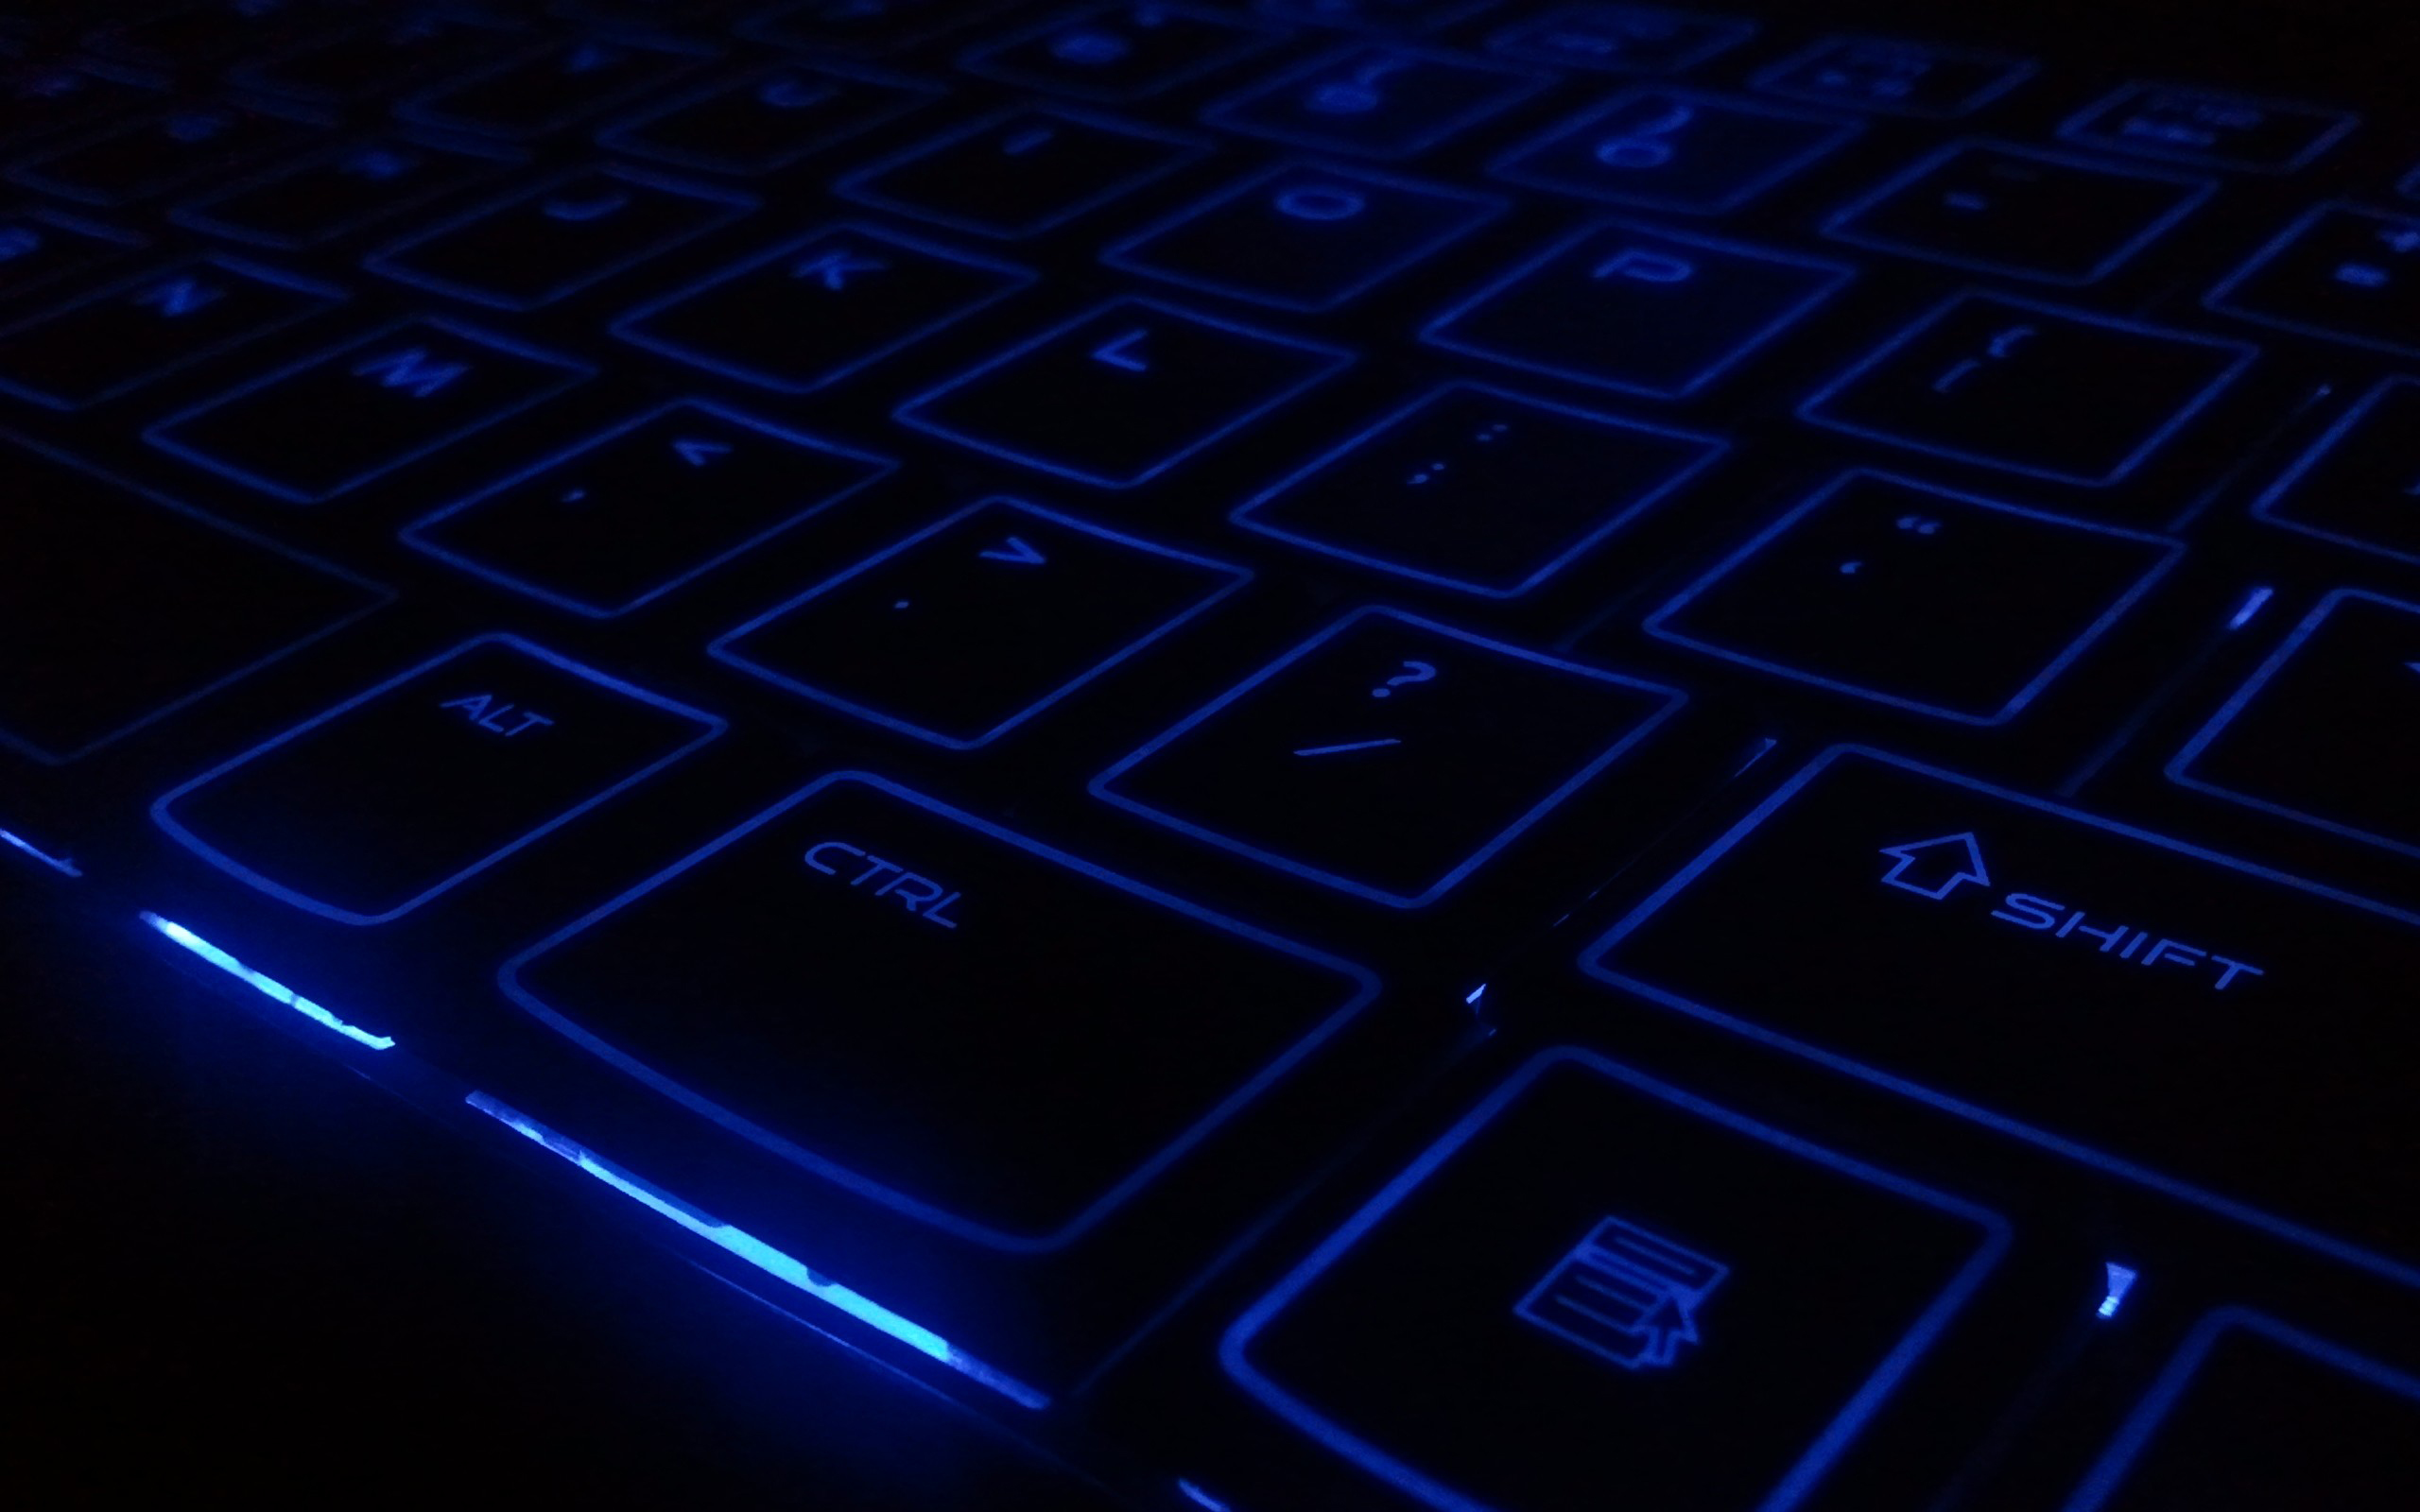 tastatur hintergrund hd,blau,computer tastatur,kobaltblau,elektrisches blau,elektronik